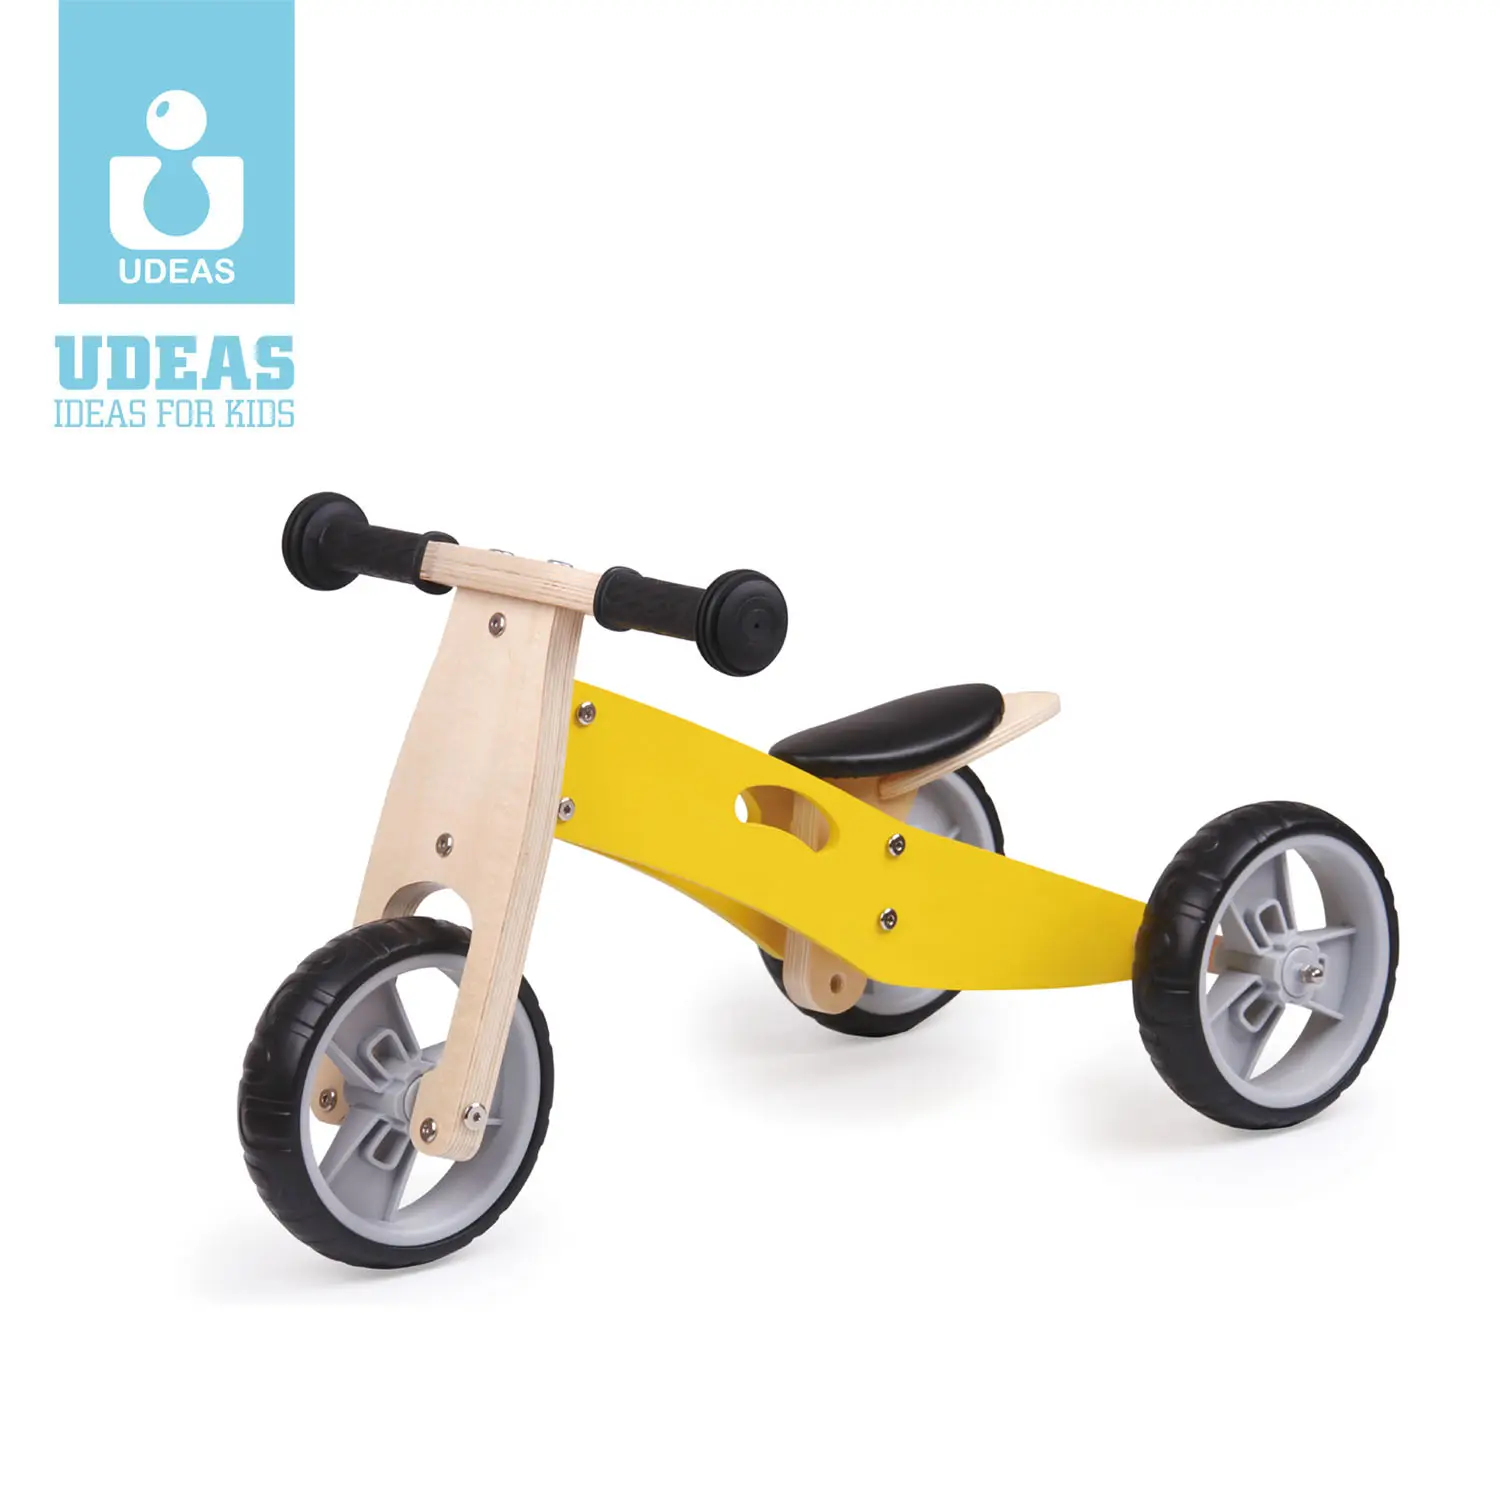 Qualidade Mini scooter Crianças 2 in1 Moto Balanço de Madeira Aprendizagem Precoce Educacional Brinquedos Andando